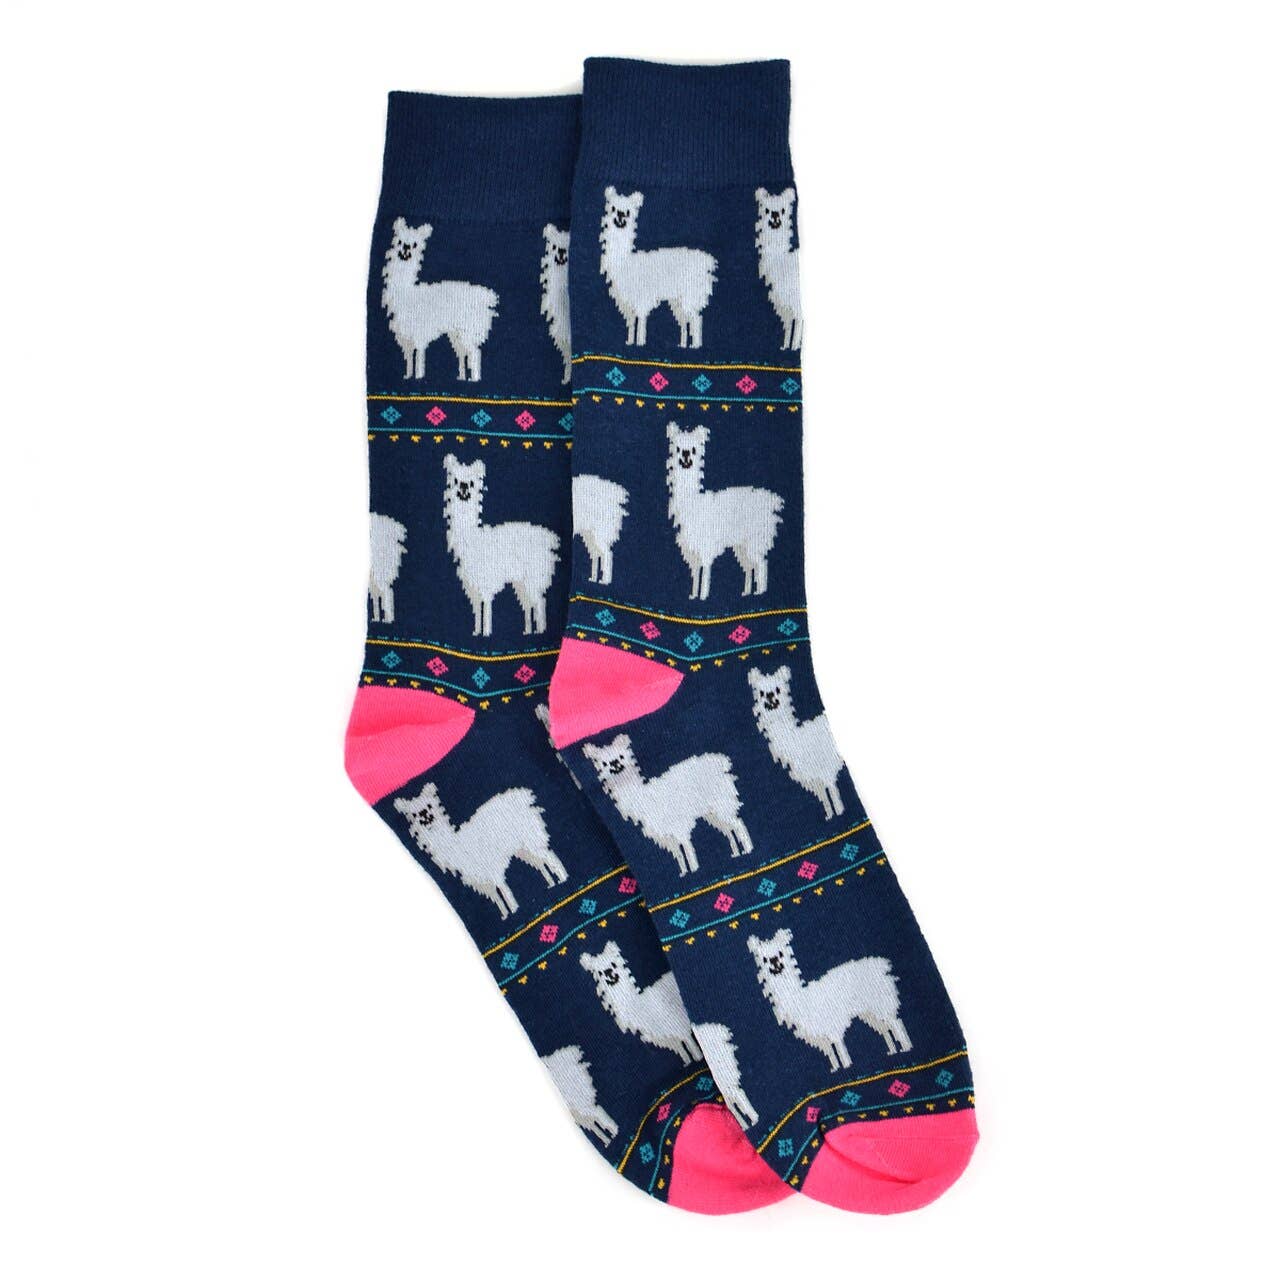 Socks: Alpaca Socks for Men